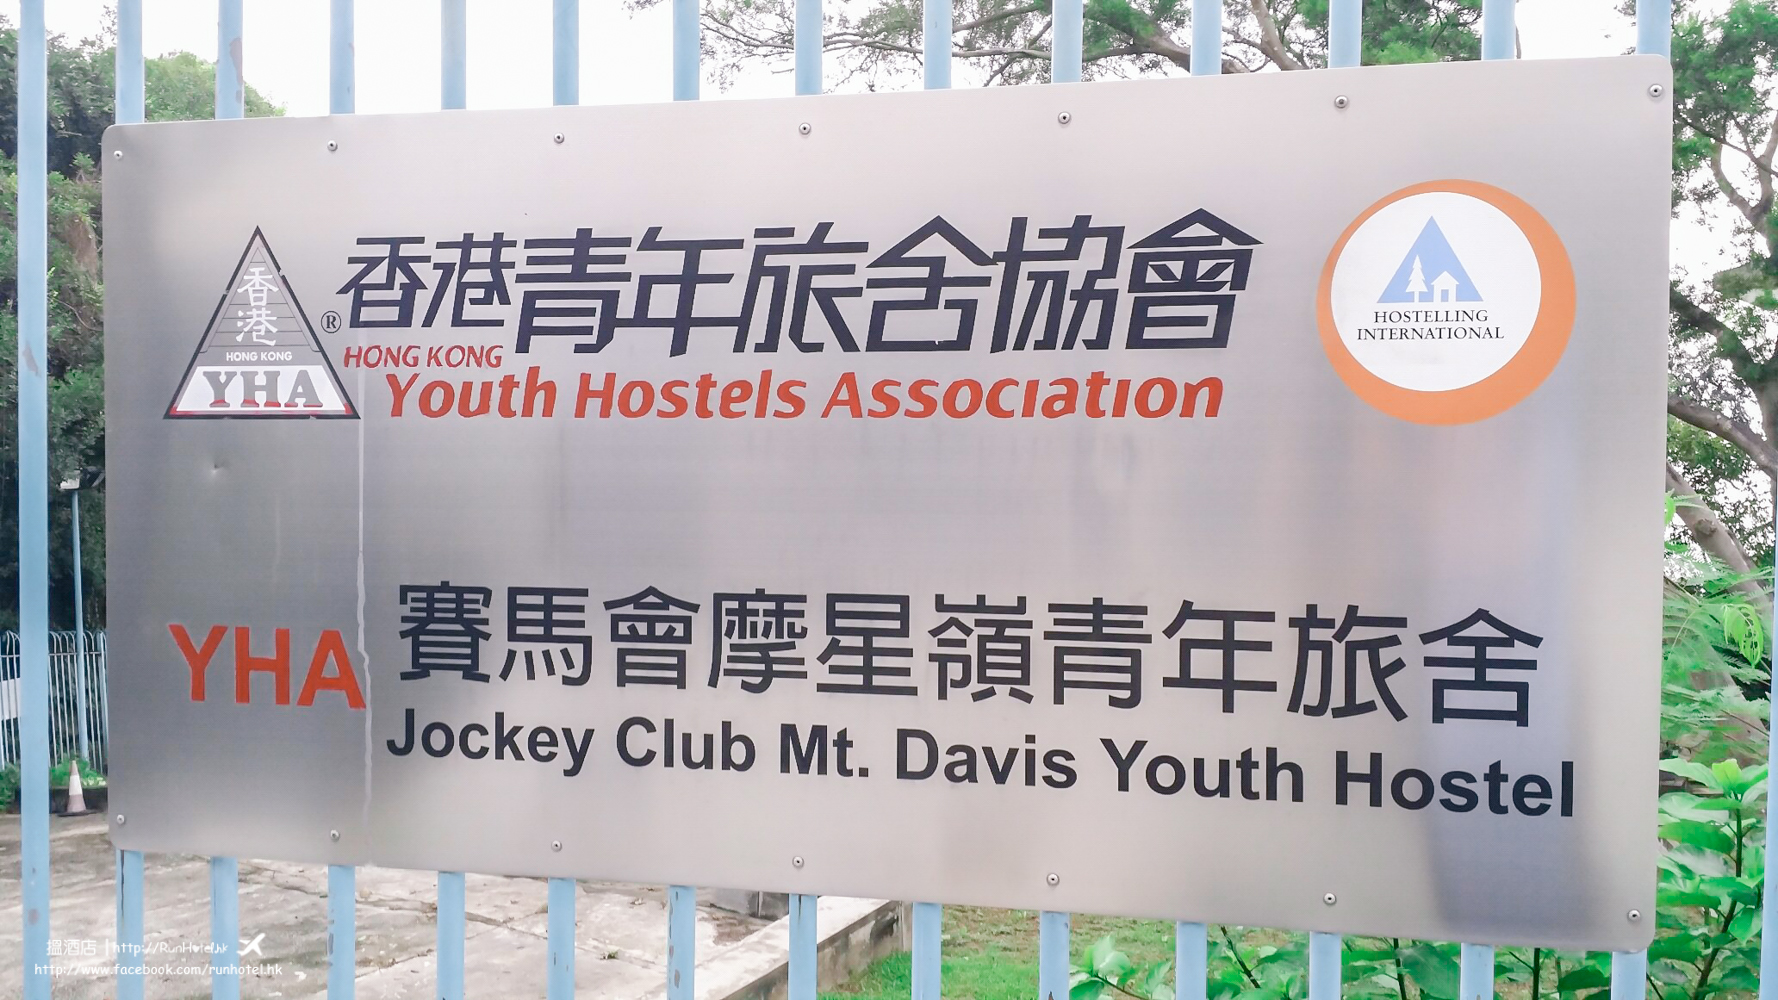 jockey-club-mt-davis-youth-hostel-1-5